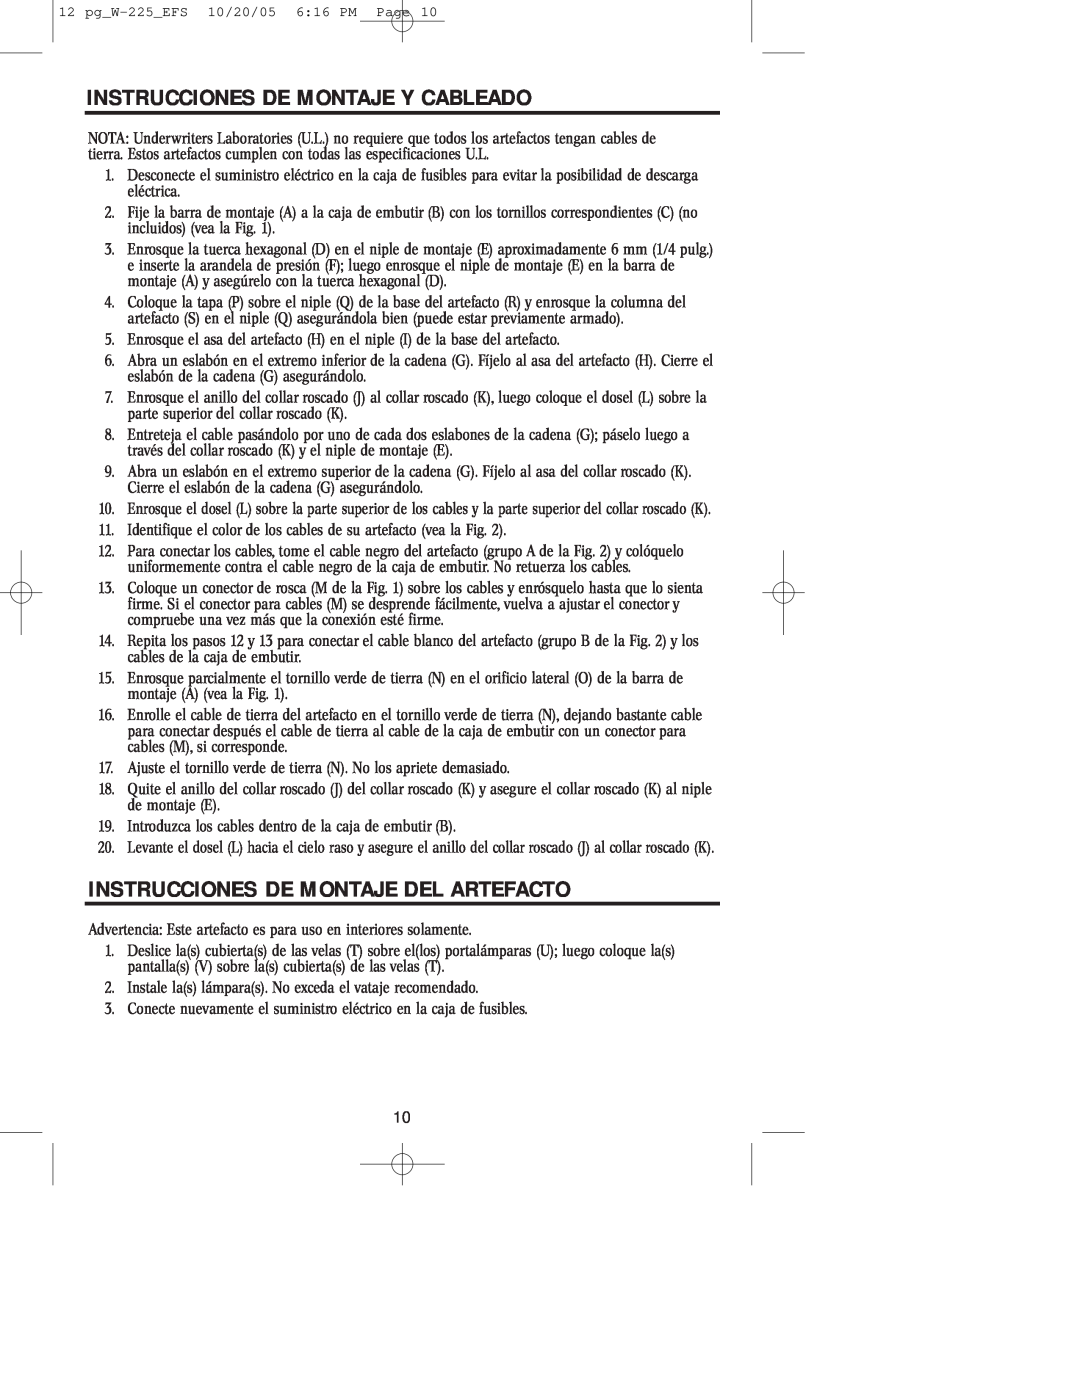 Westinghouse W-225 owner manual Instrucciones De Montaje Y Cableado, Instrucciones De Montaje Del Artefacto 